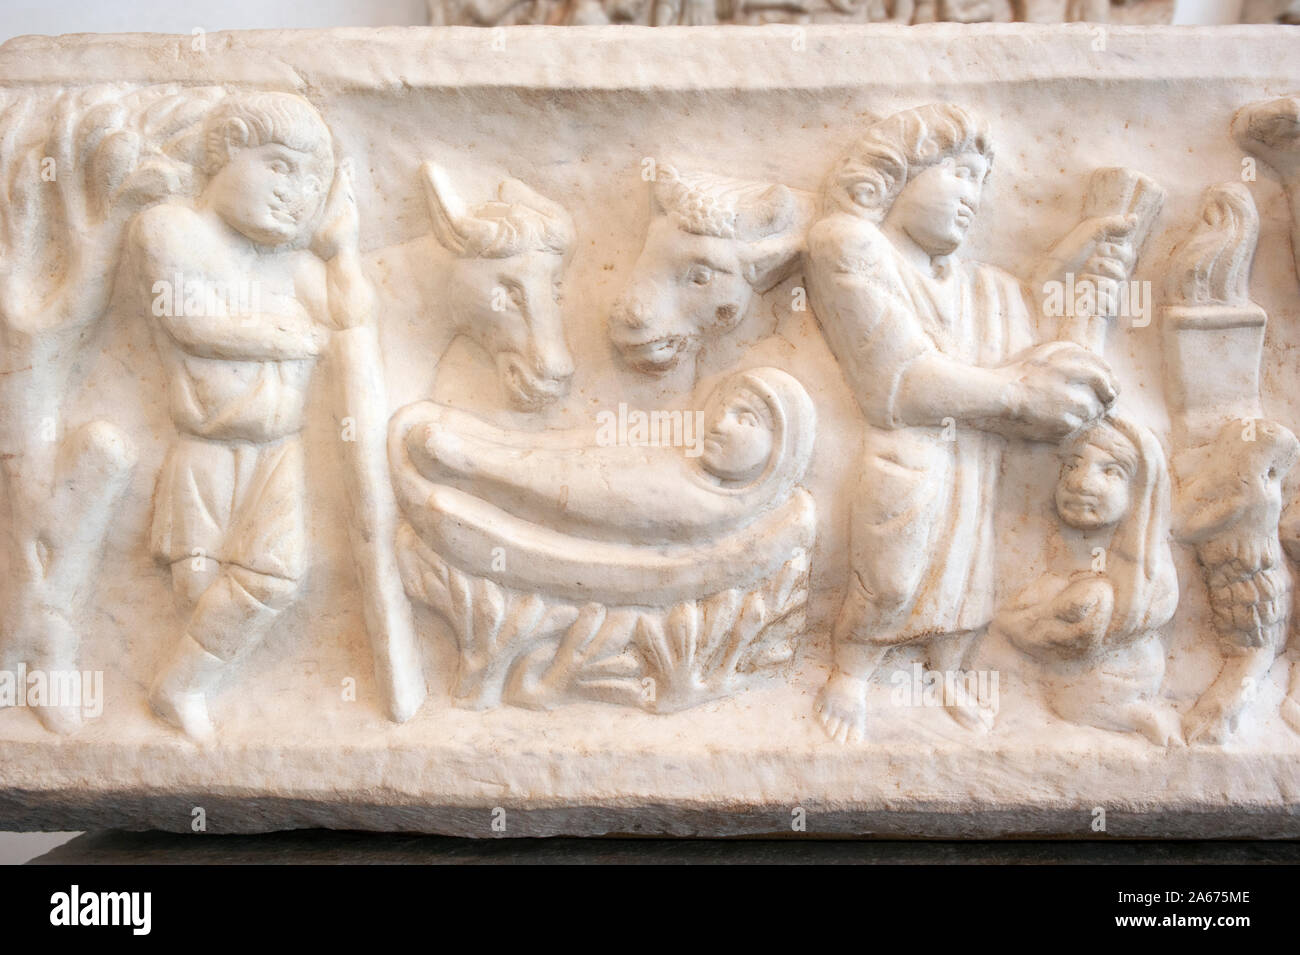 Italia, Roma, Palazzo massimo alle Terme, Museo Nazionale Romano, sarcofago paleocristiano di Marco Claudio (IV secolo d.C.) Foto Stock